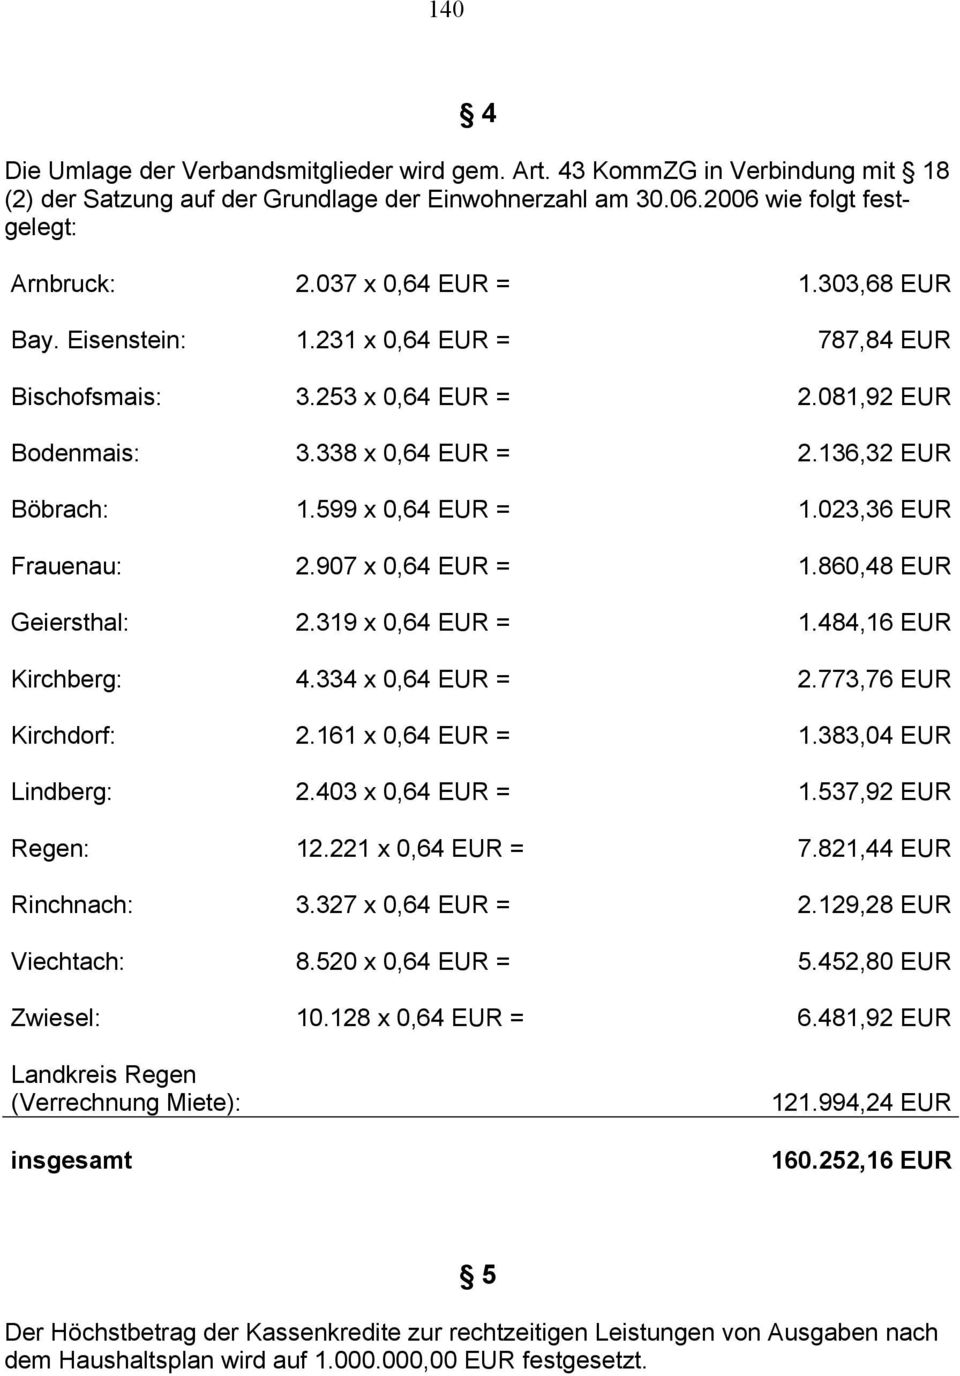 023,36 EUR Frauenau: 2.907 x 0,64 EUR = 1.860,48 EUR Geiersthal: 2.319 x 0,64 EUR = 1.484,16 EUR Kirchberg: 4.334 x 0,64 EUR = 2.773,76 EUR Kirchdorf: 2.161 x 0,64 EUR = 1.383,04 EUR Lindberg: 2.